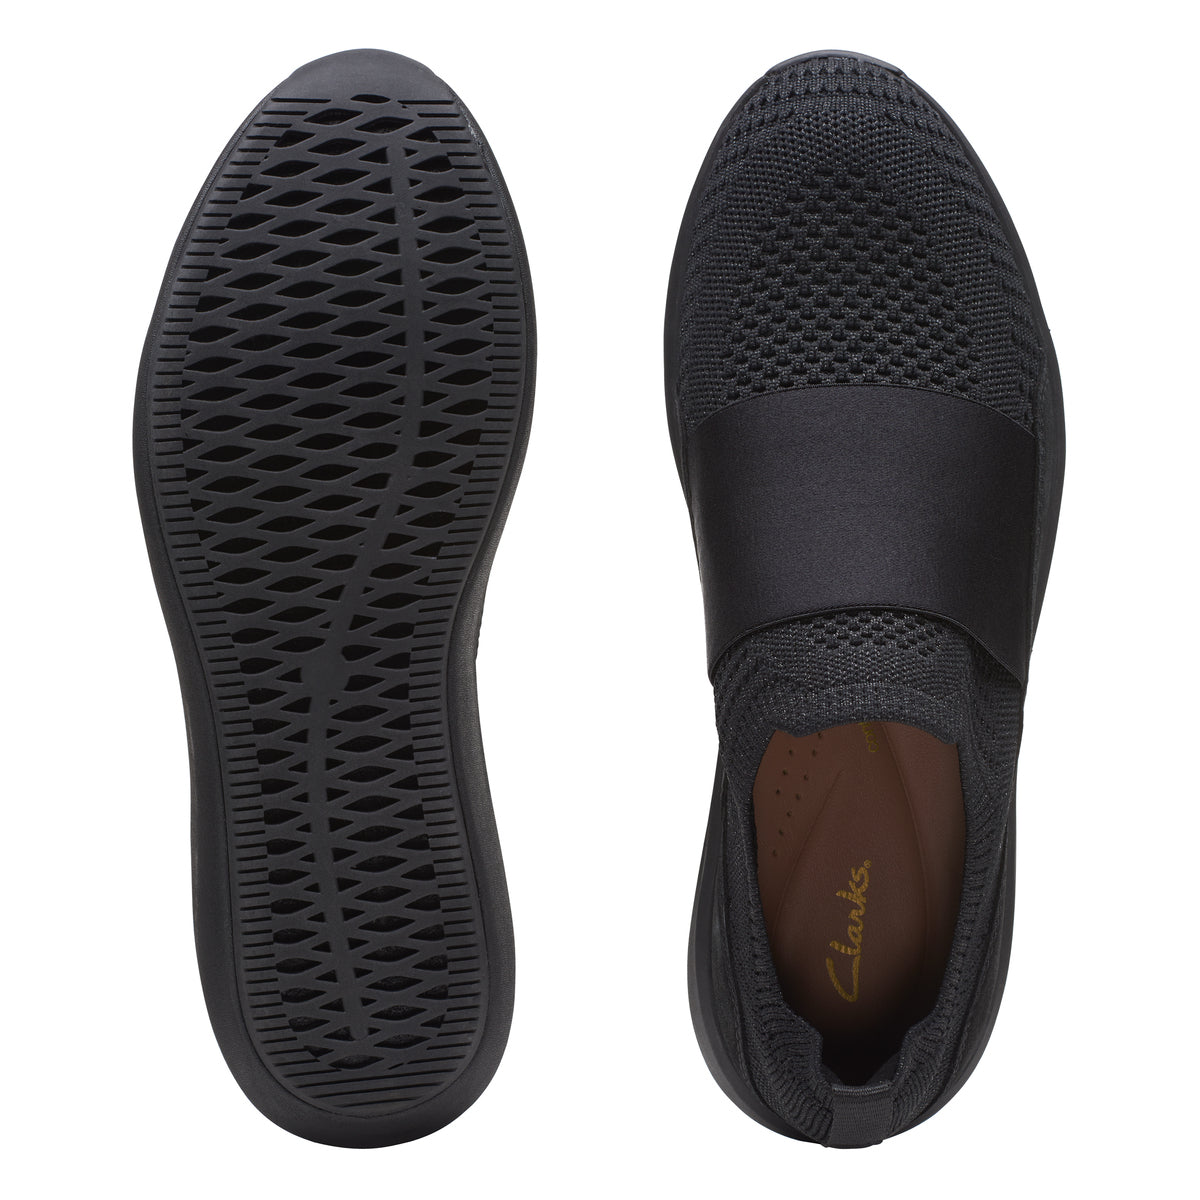 Sneakers De La Marca Clarks Para Mujer Modelo Un Rio Knit Black Combi En Color Negro